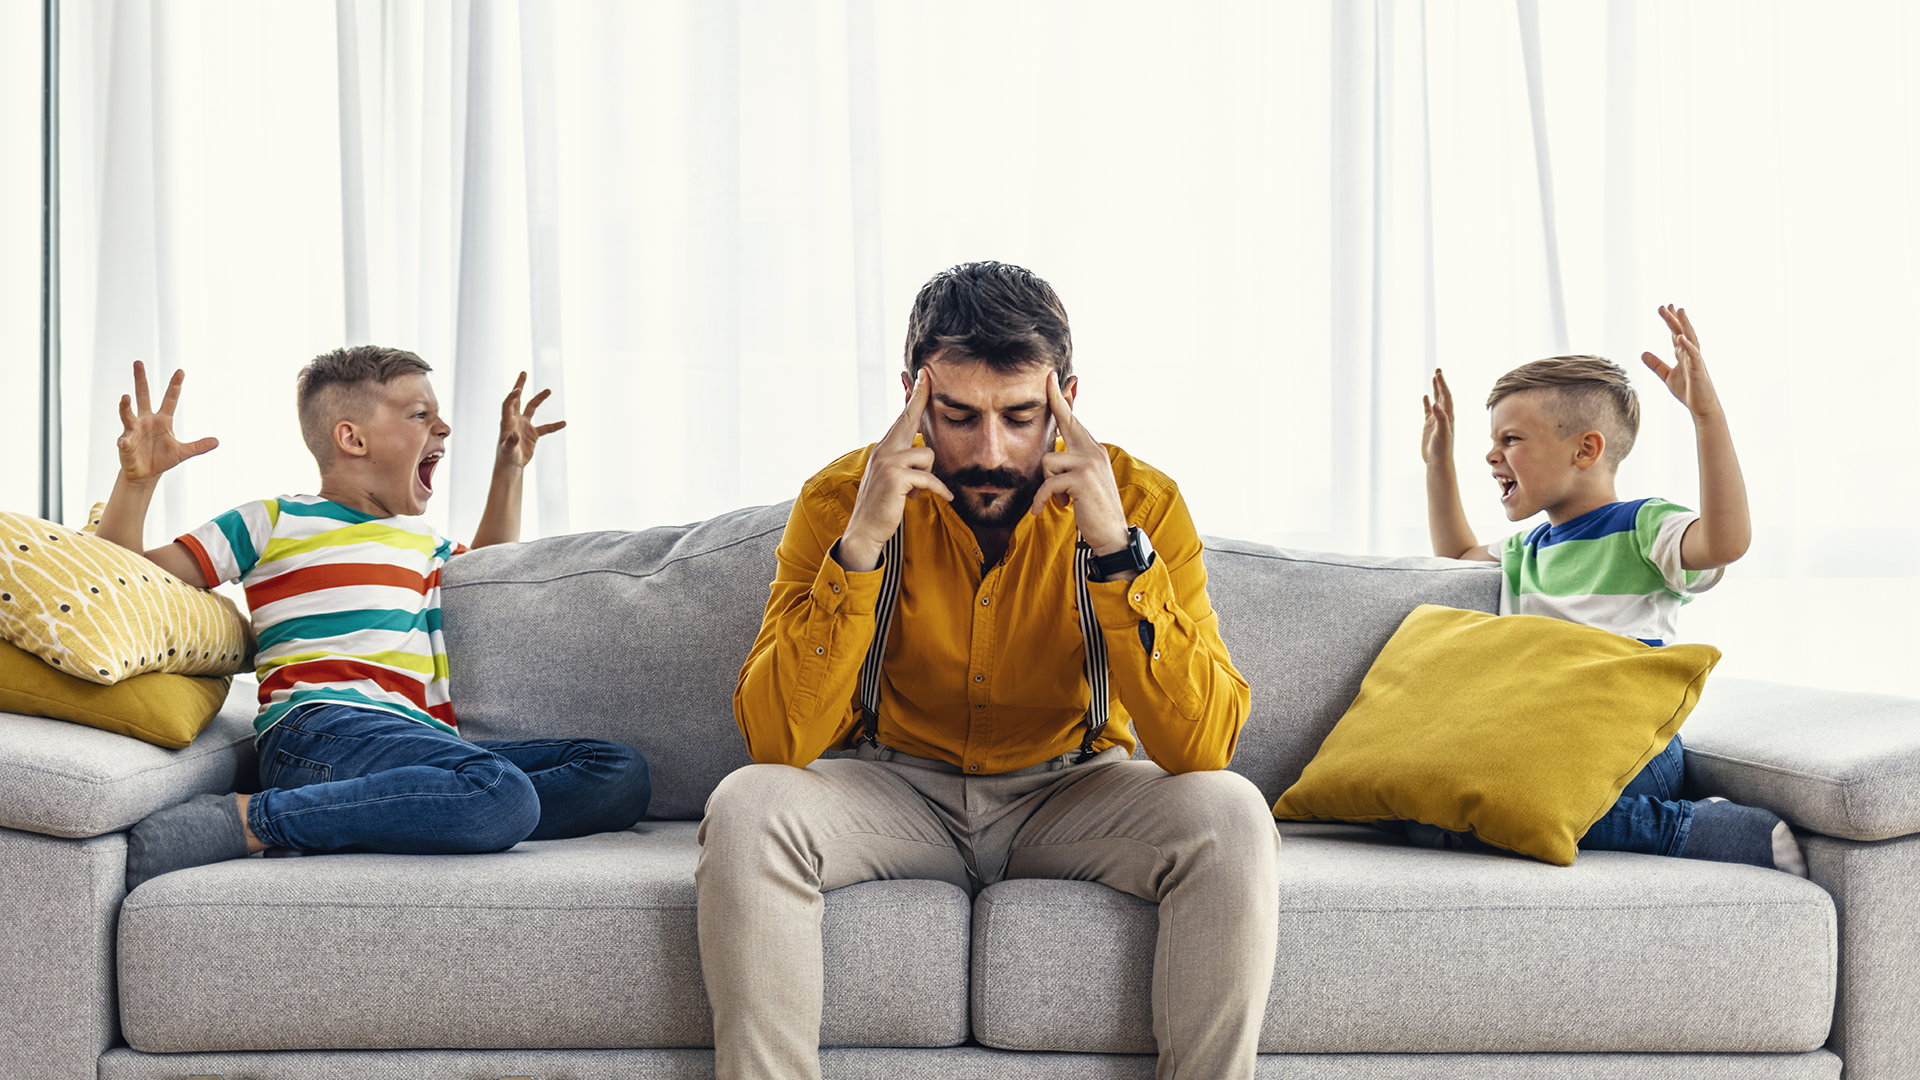 Isä ja kaksi lasta sohvalla. Lapset näyttävät riitelevän ja isä sulkee korviansa käsillään.